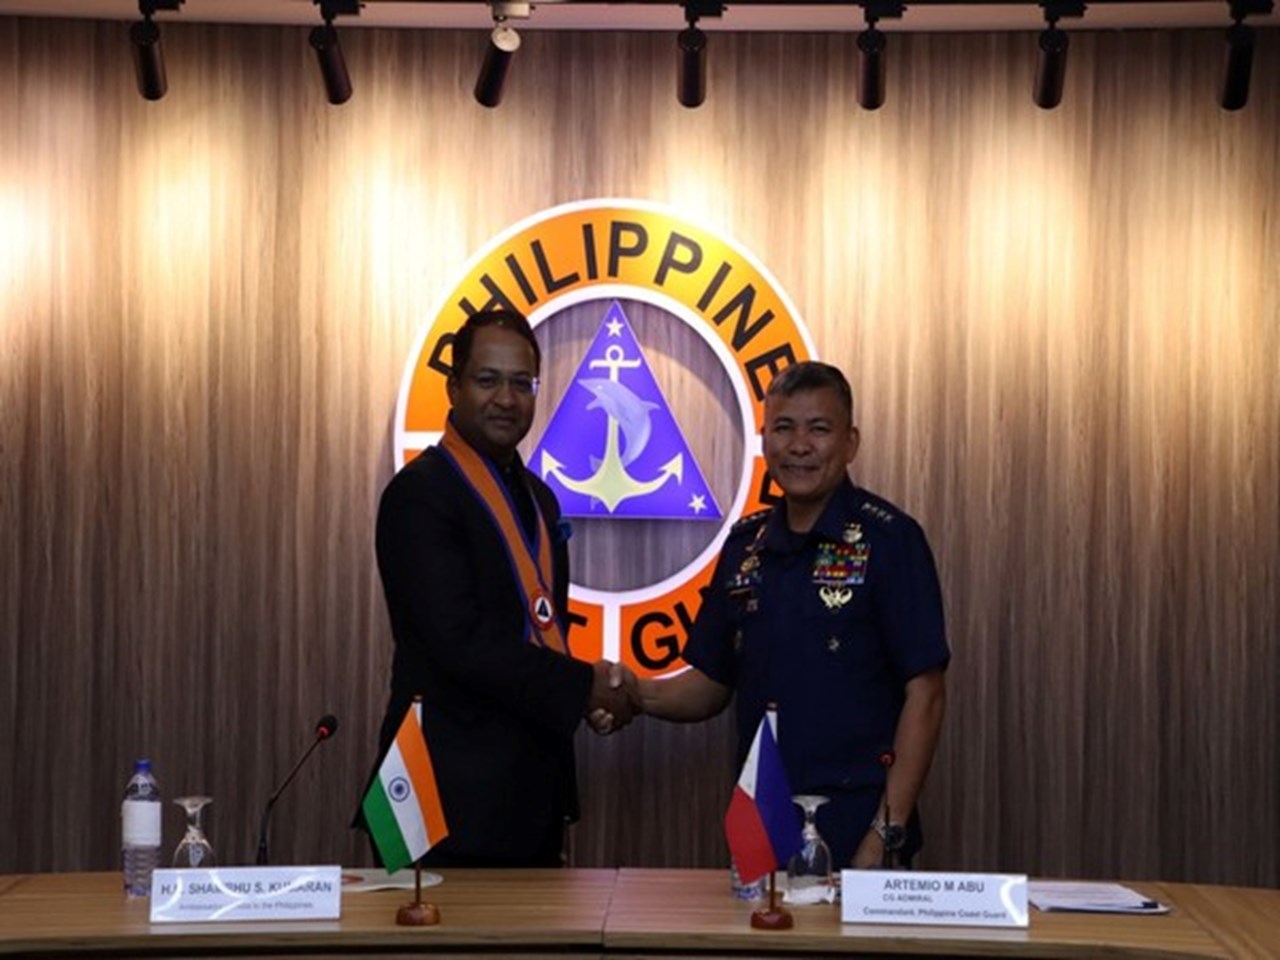 L’ambassadeur indien discute de la préparation maritime avec les garde-côtes philippins